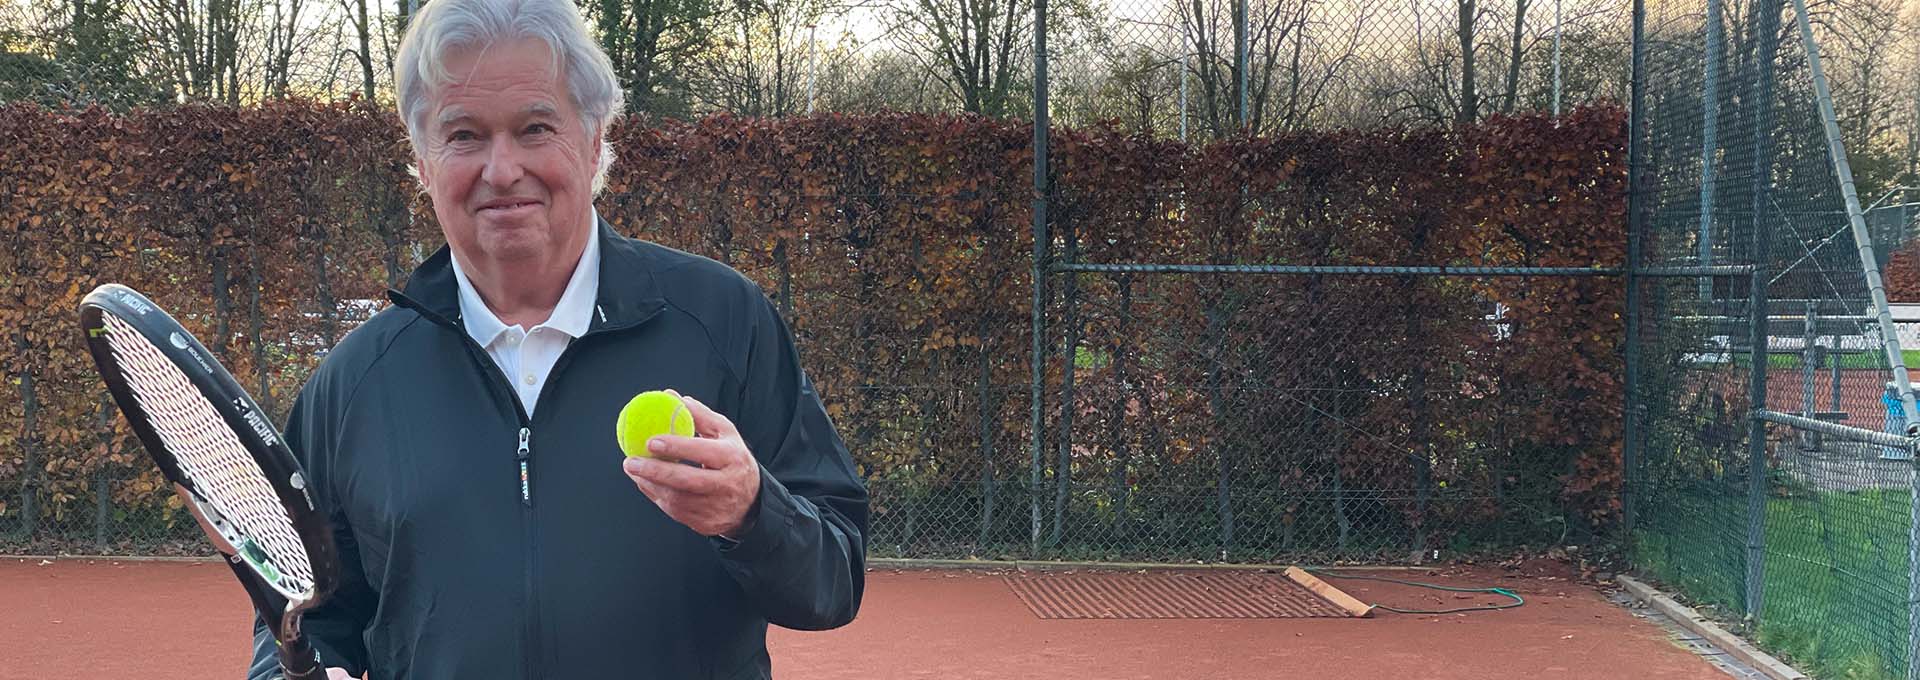 Пользователь слухового аппарата Bernafon Alpha (мужчина) с теннисным мячом и ракеткой в руках на корте, смотрит в камеру, готовый играть